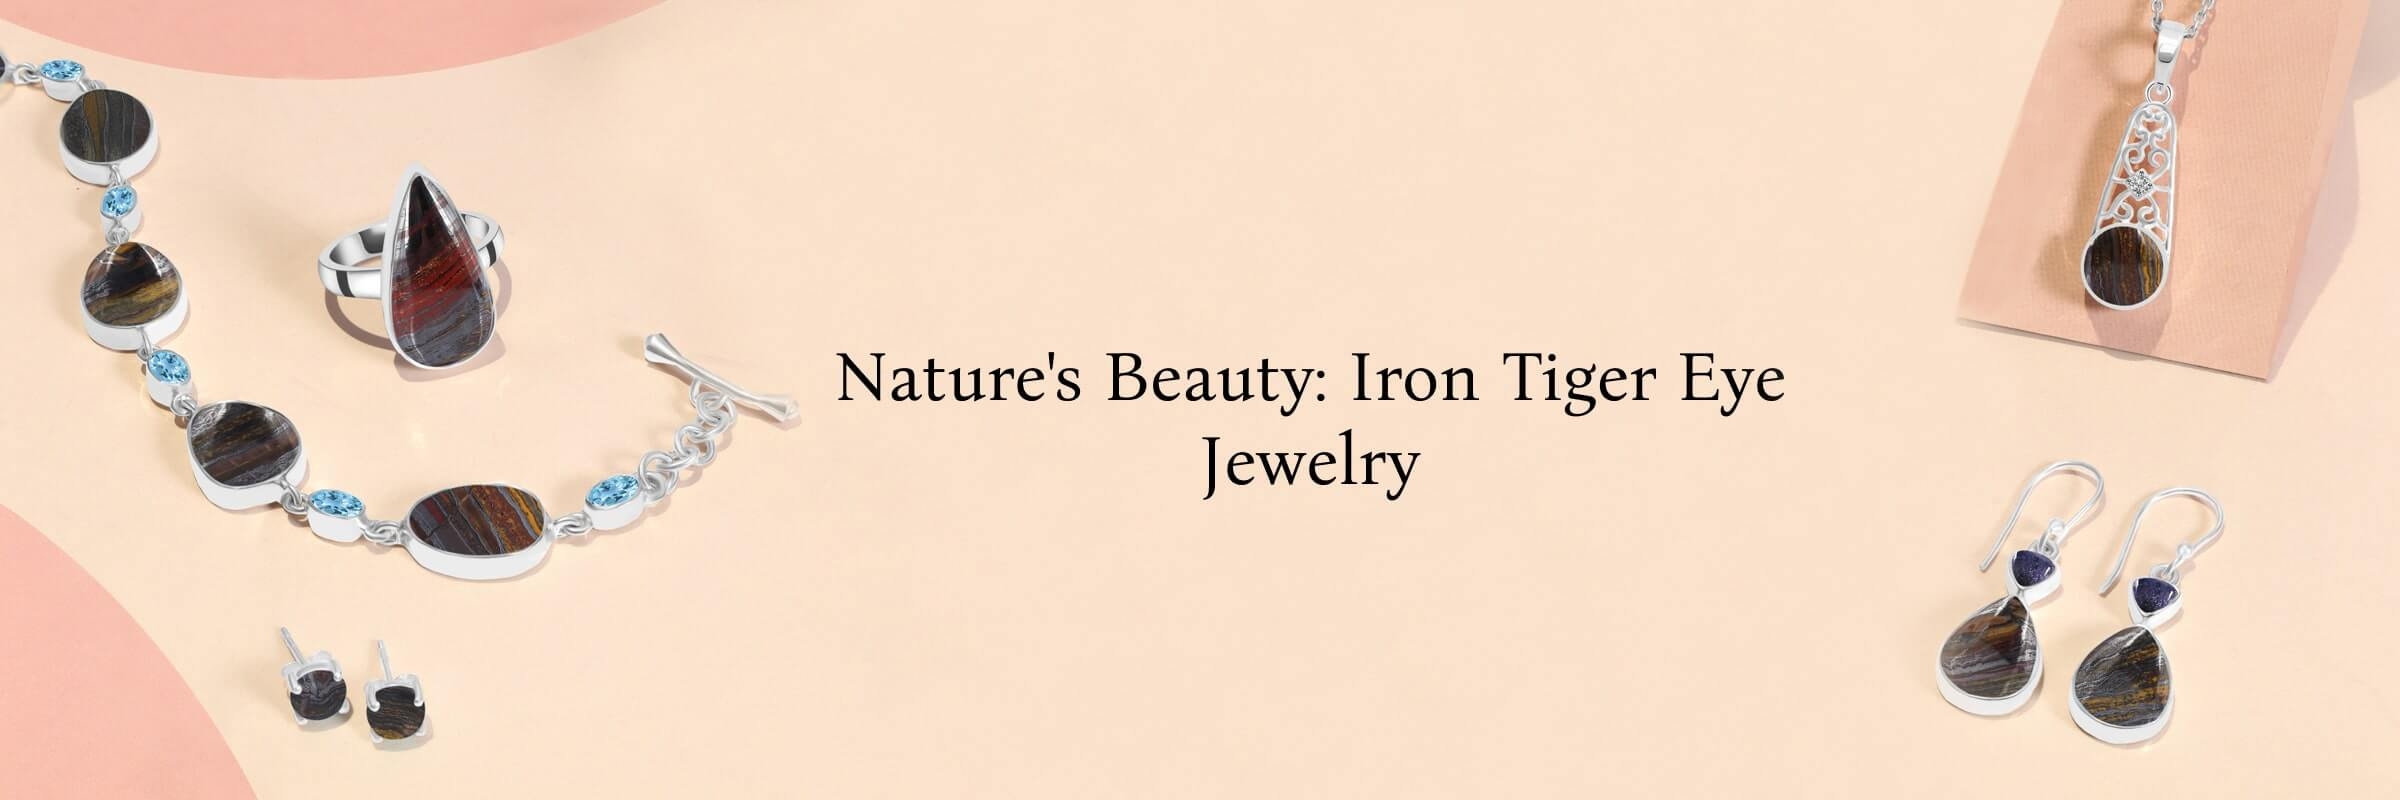 Iron Tiger Eye Jewelry